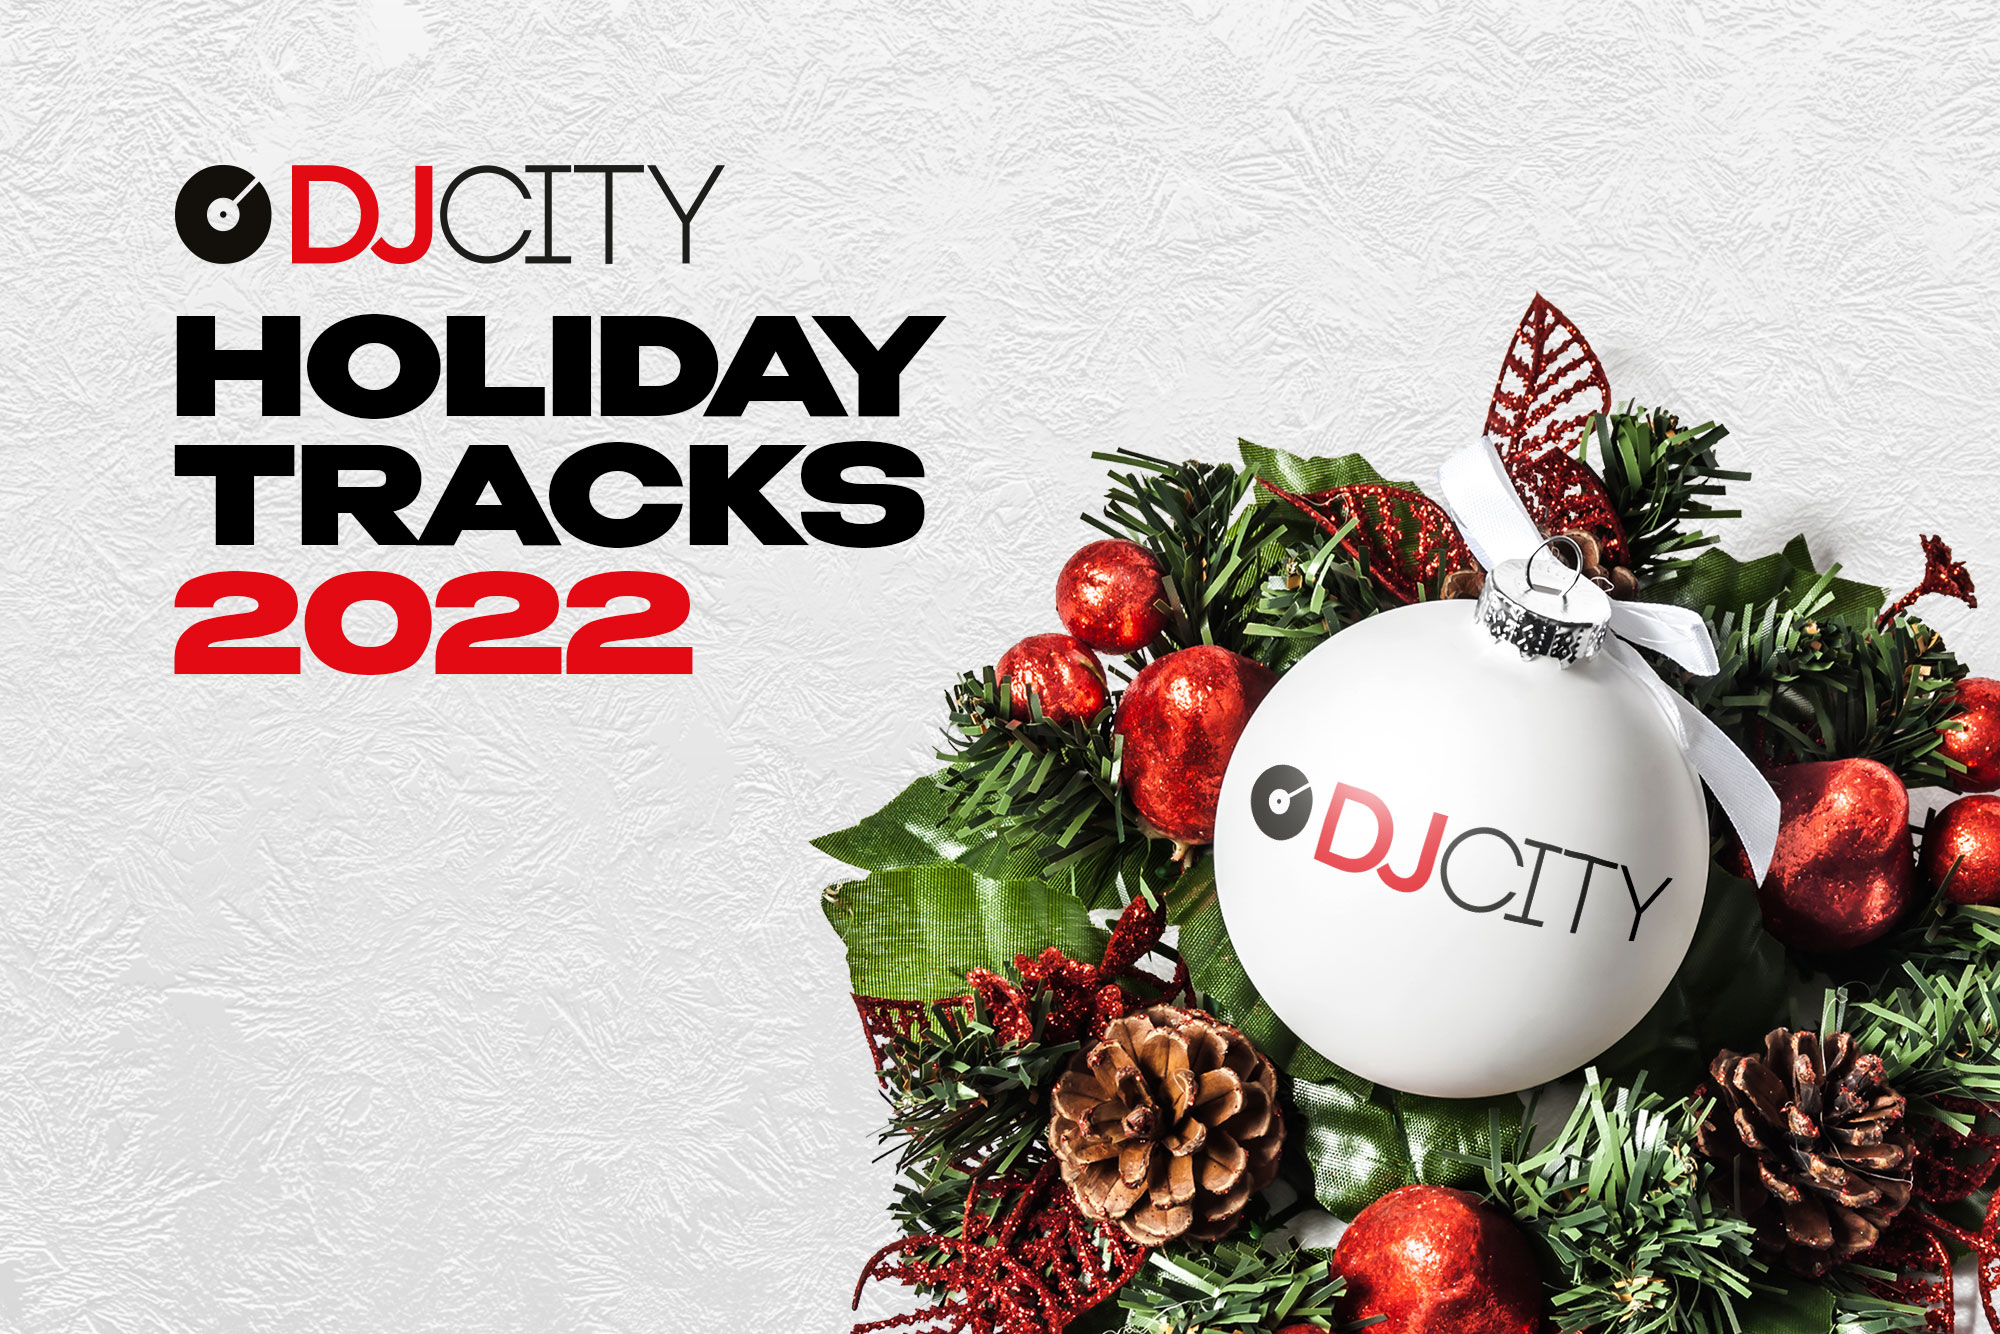 DJcity’s Holiday Tracks 2022